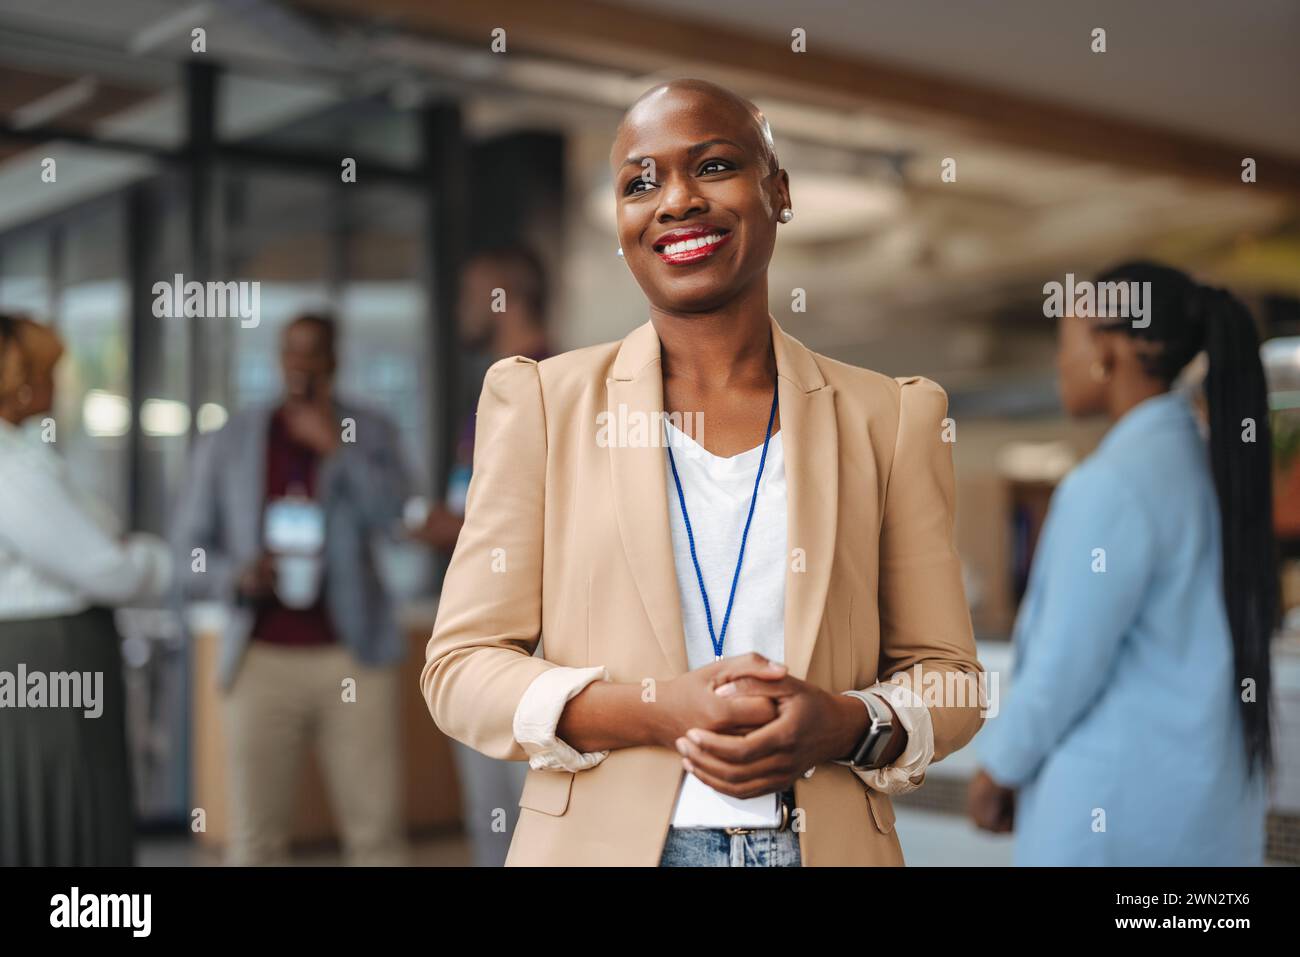 Professionelle Geschäftsfrau mit strahlendem Lächeln steht selbstbewusst in einem modernen Büroumfeld und reflektiert Positivität und Führungsstärke wie ihre Kollegen Stockfoto